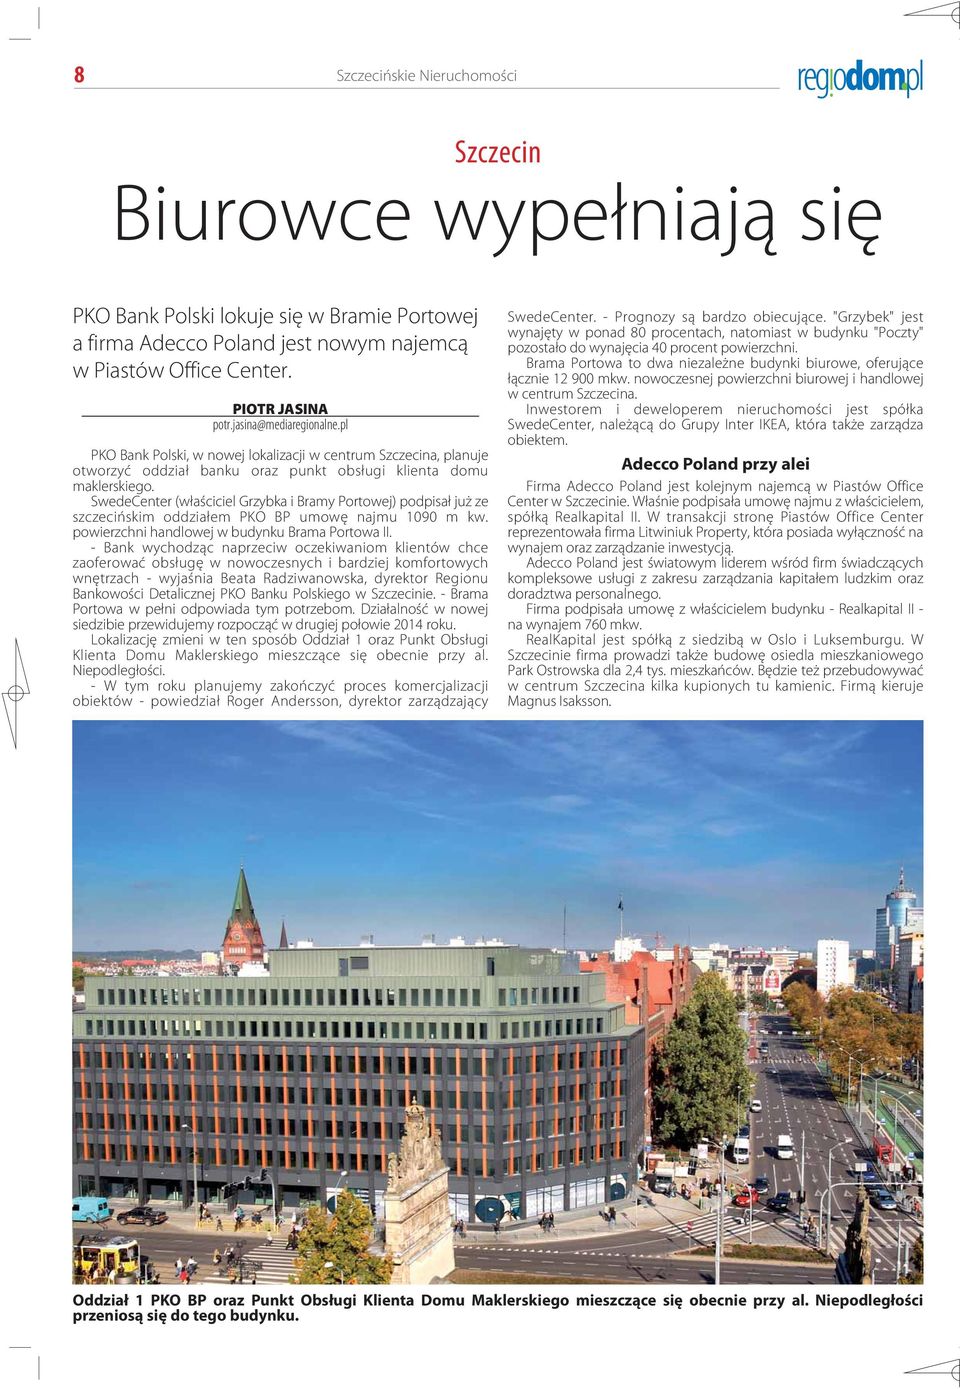 SwedeCenter (właściciel Grzybka i Bramy Portowej) podpisał już ze szczecińskim oddziałem PKO BP umowę najmu 1090 m kw. powierzchni handlowej w budynku Brama Portowa II.